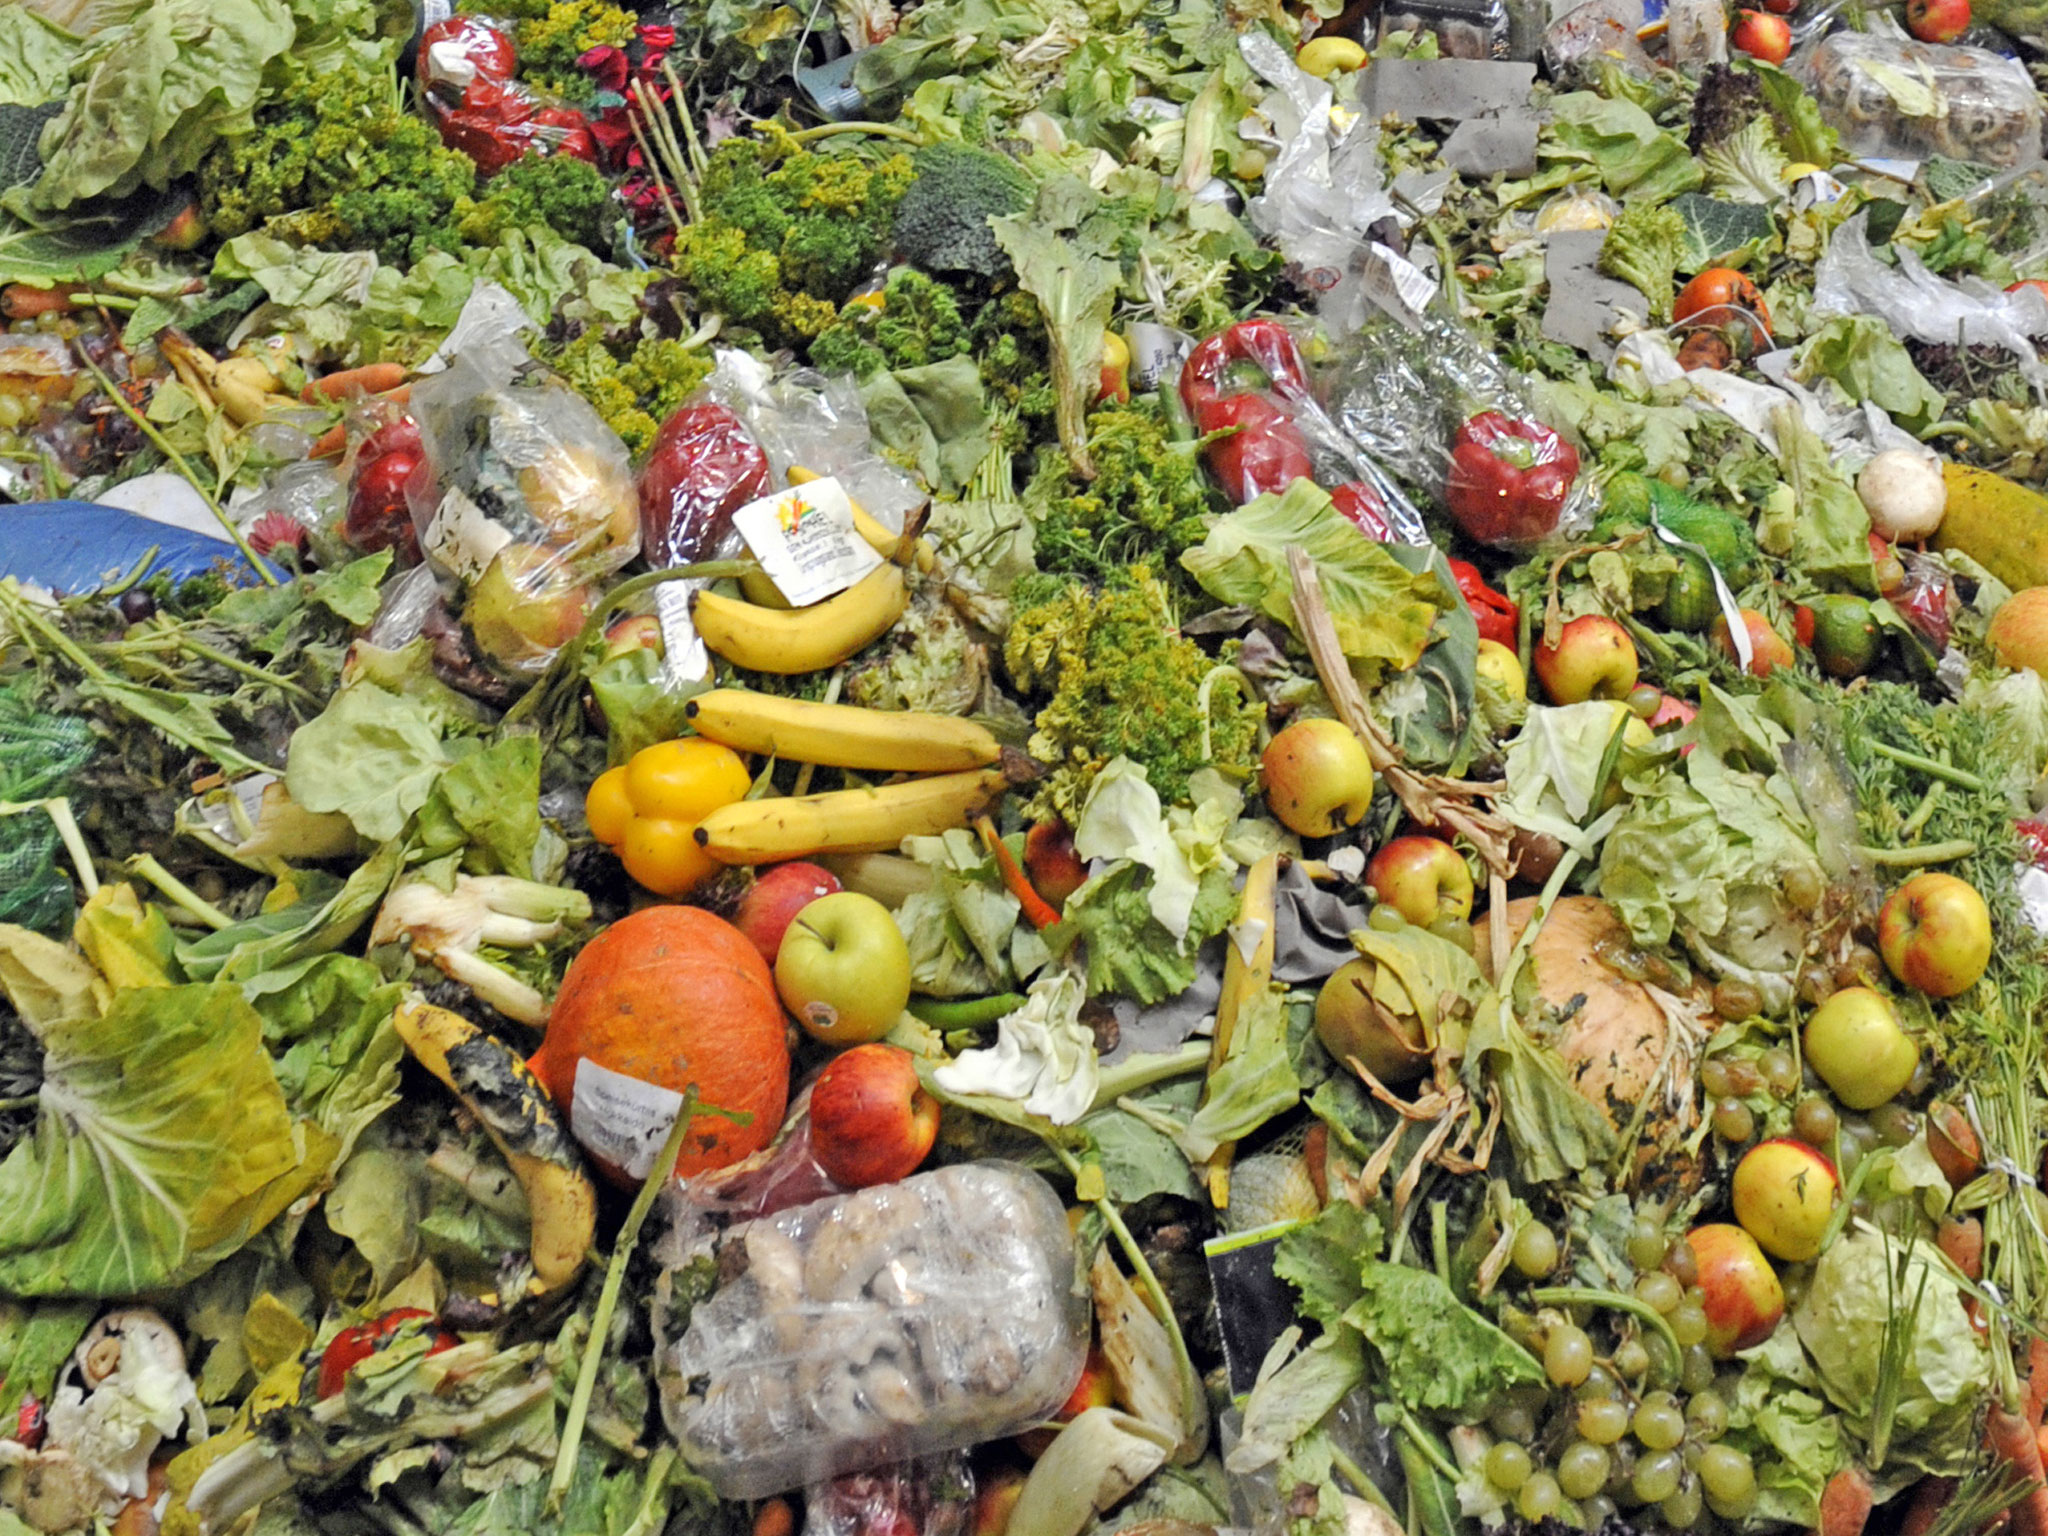 Food Waste Action – France